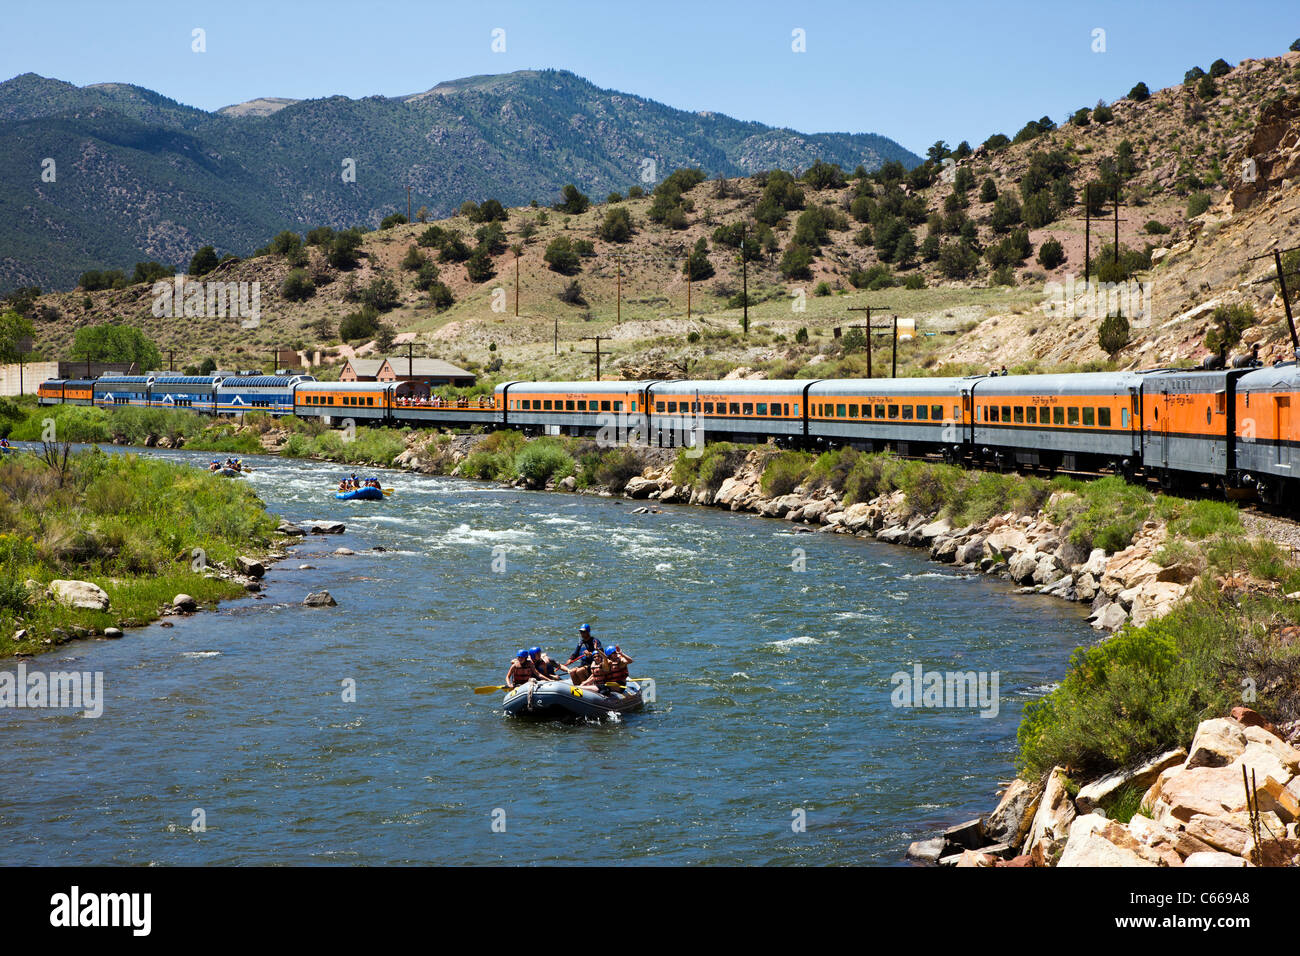 Train touristique populaire passe par les 1 000' de profond Royal Gorge Route le long de la rivière Arkansas, Colorado, USA Banque D'Images